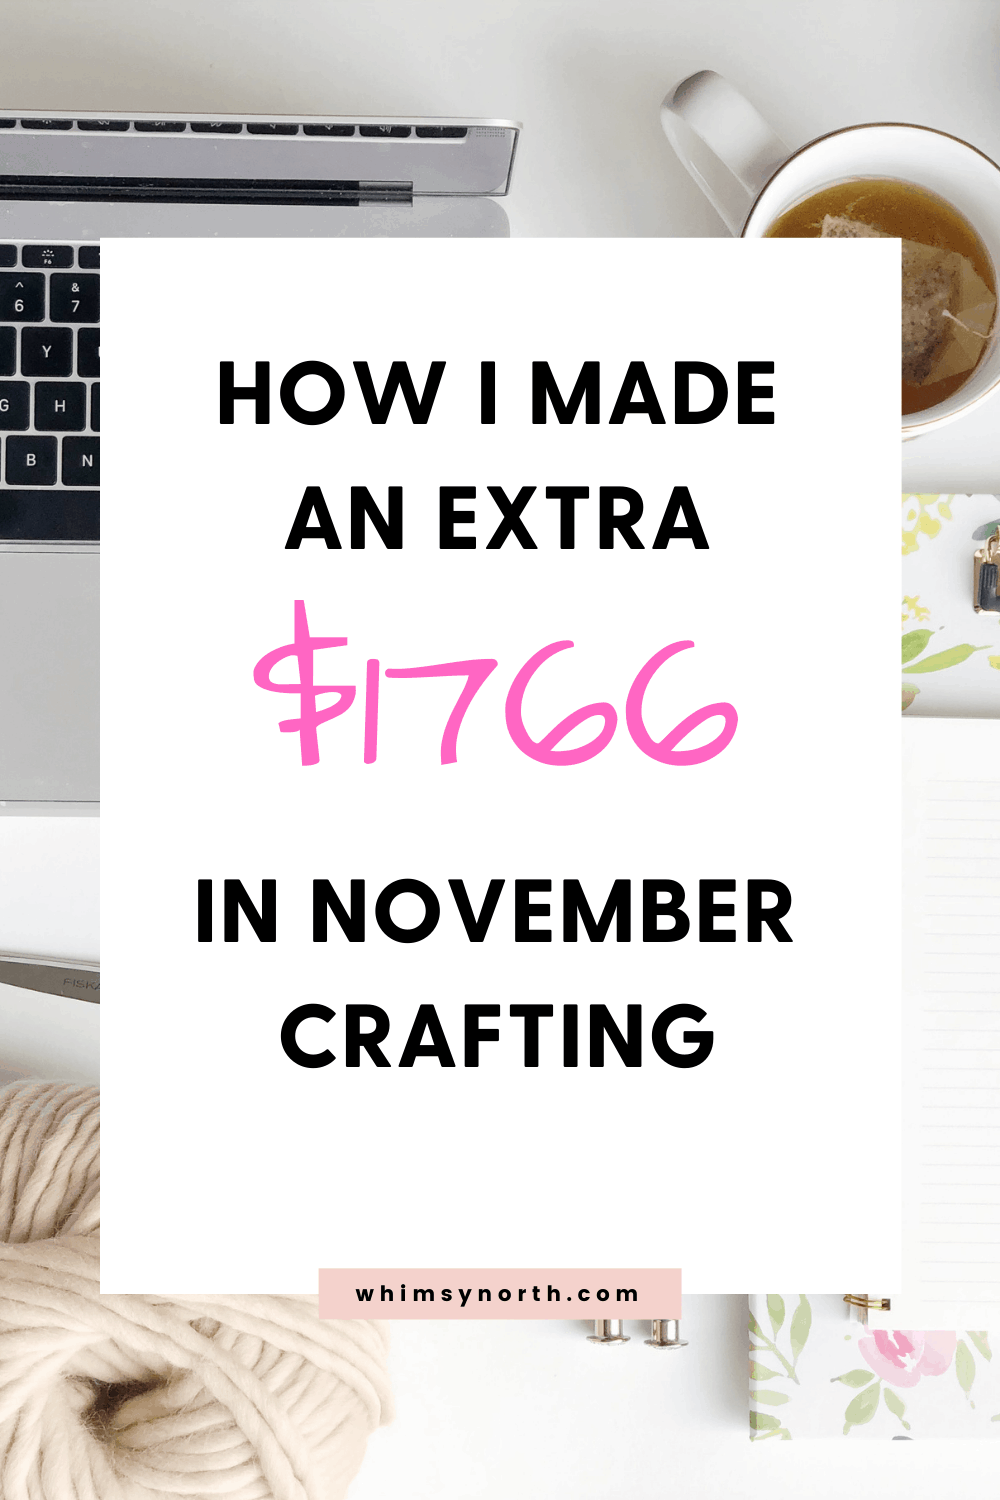 How I made $1766 Knitting in November 2020